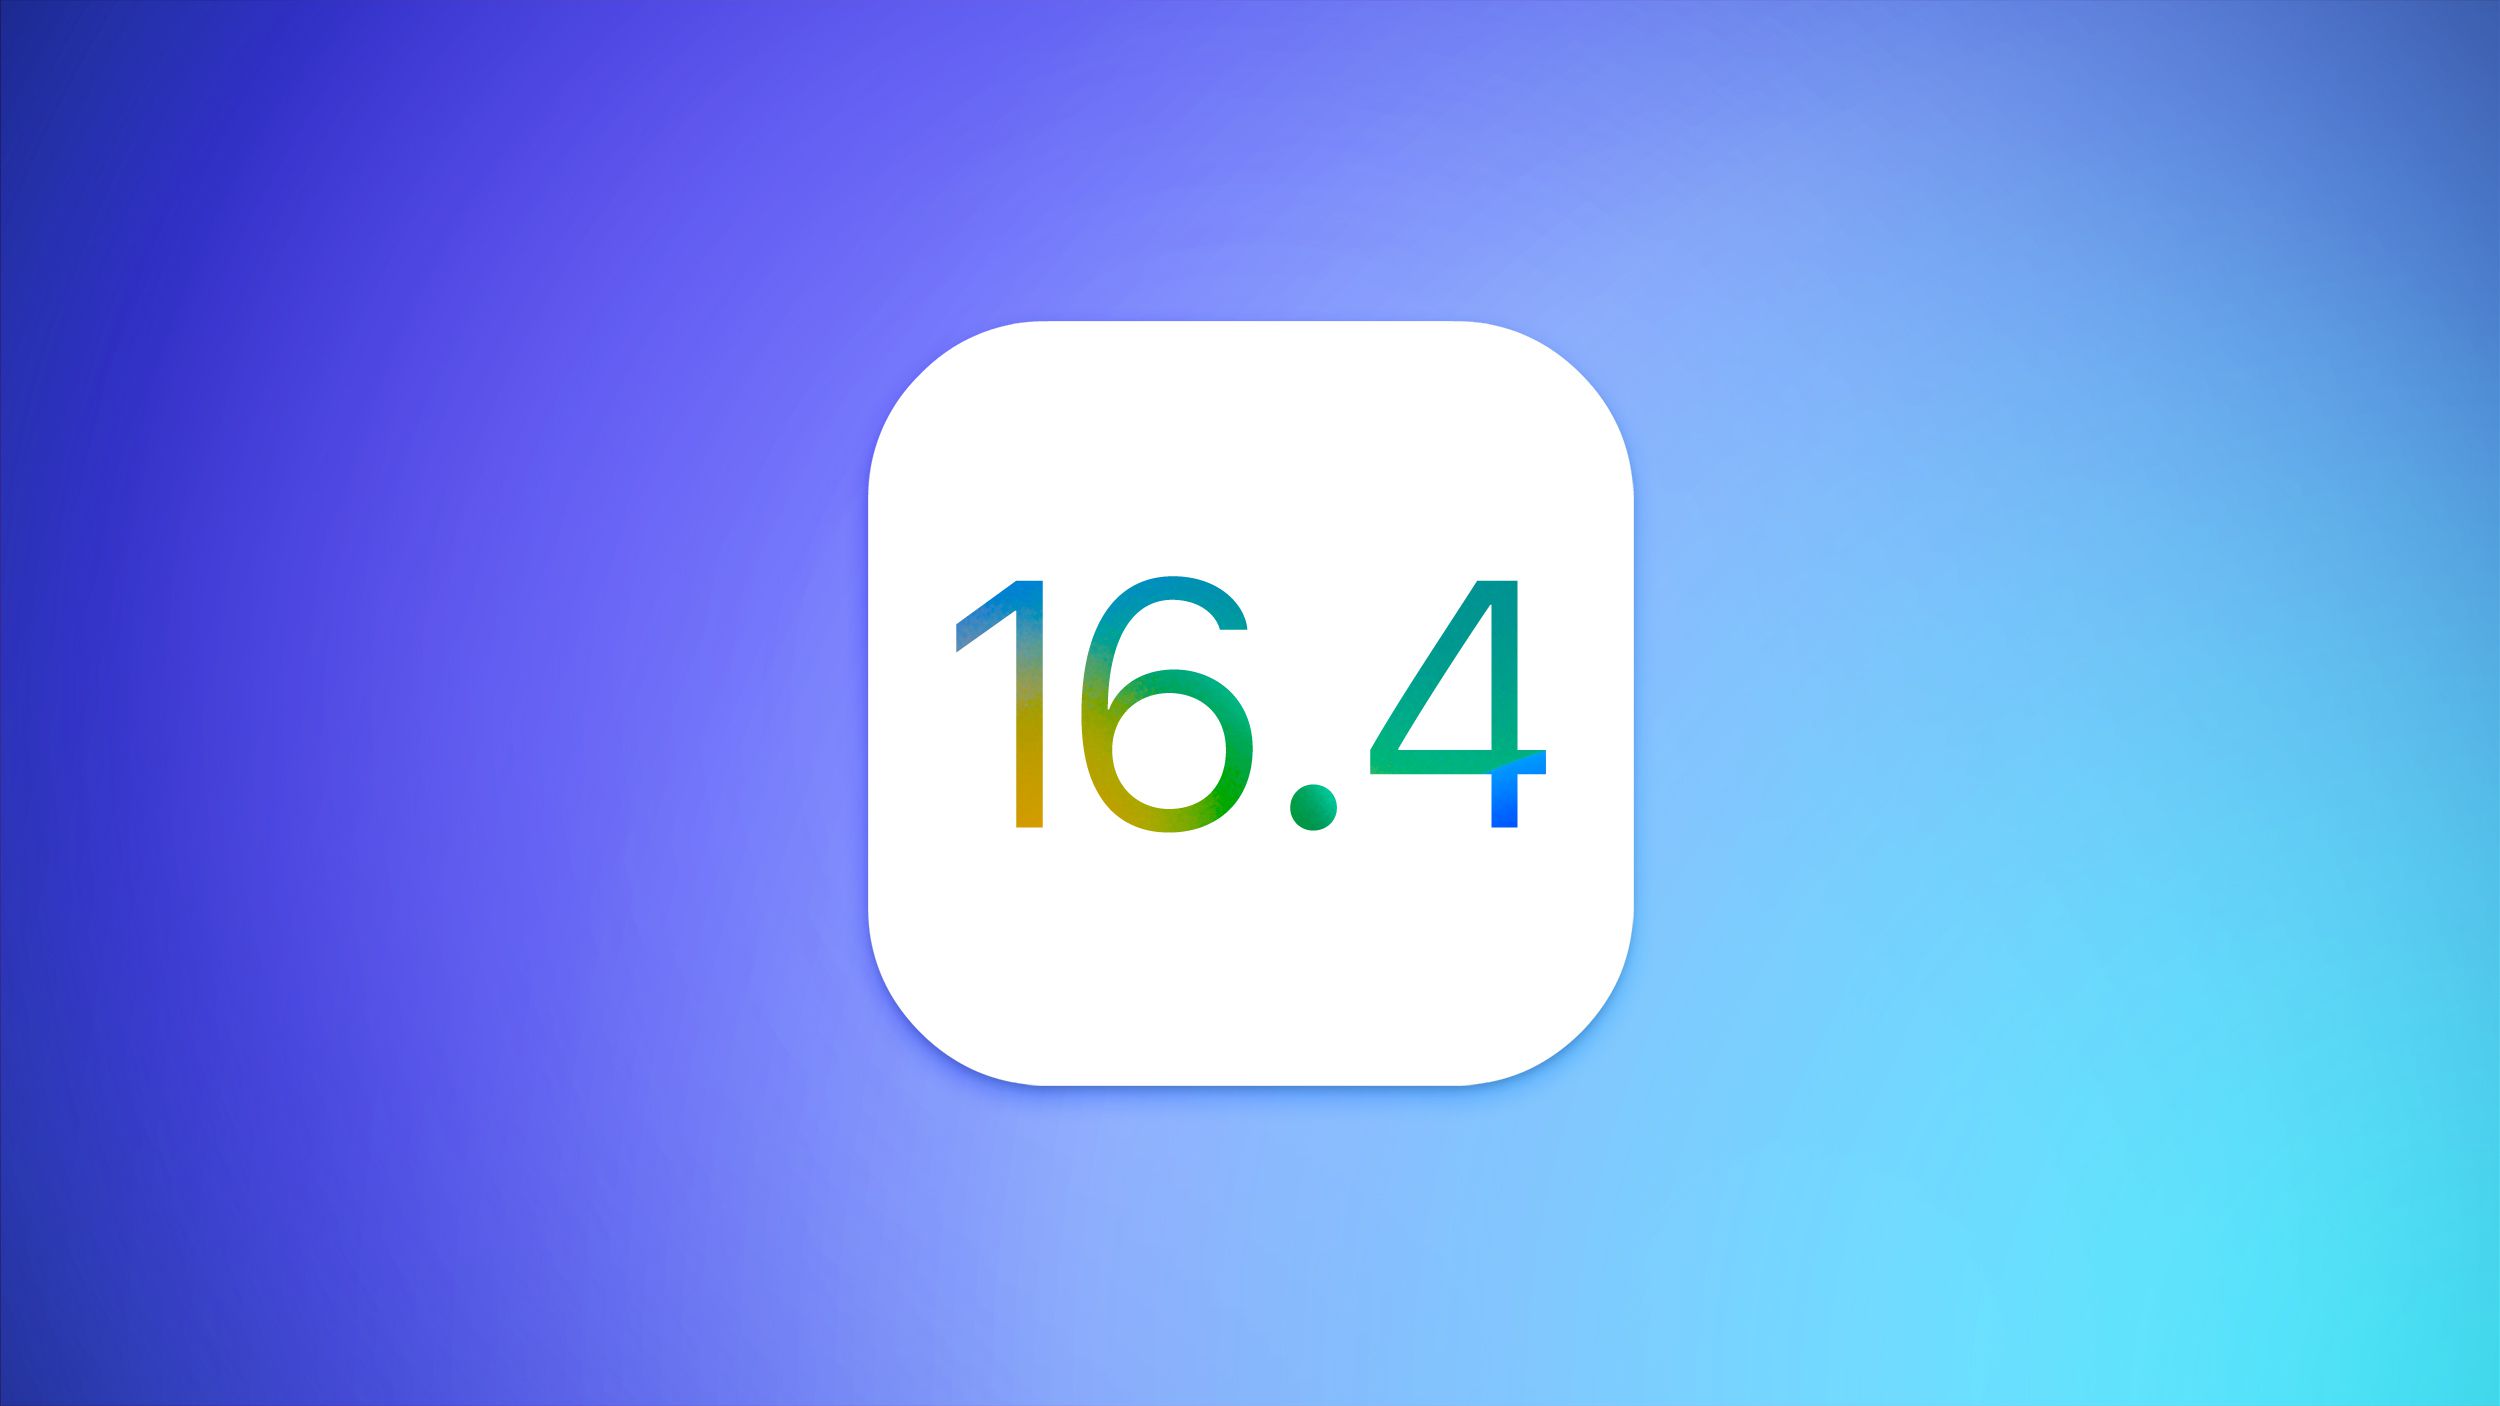 Apple veröffentlicht iOS 16.4 mit neuen Emojis, Safari-Web-Push-Benachrichtigungen, experimentellen Änderungen, Tonisolierung für Anrufe und mehr